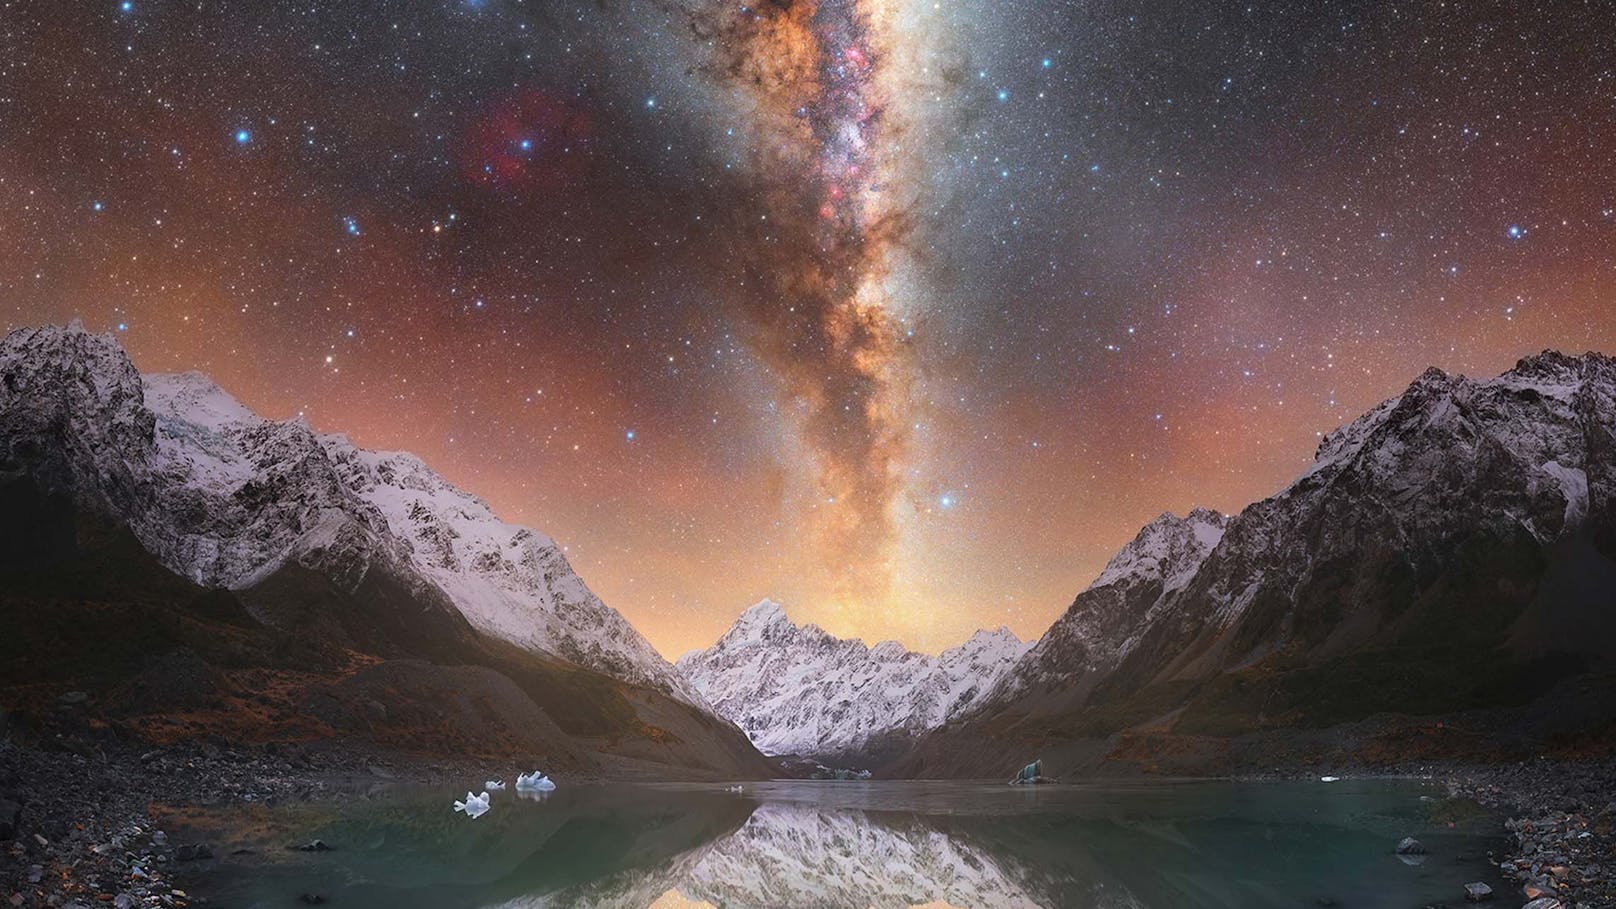 "Lightning Lake" von Tom Rae, aufgenommen im Mount Cook National Park in Neuseeland